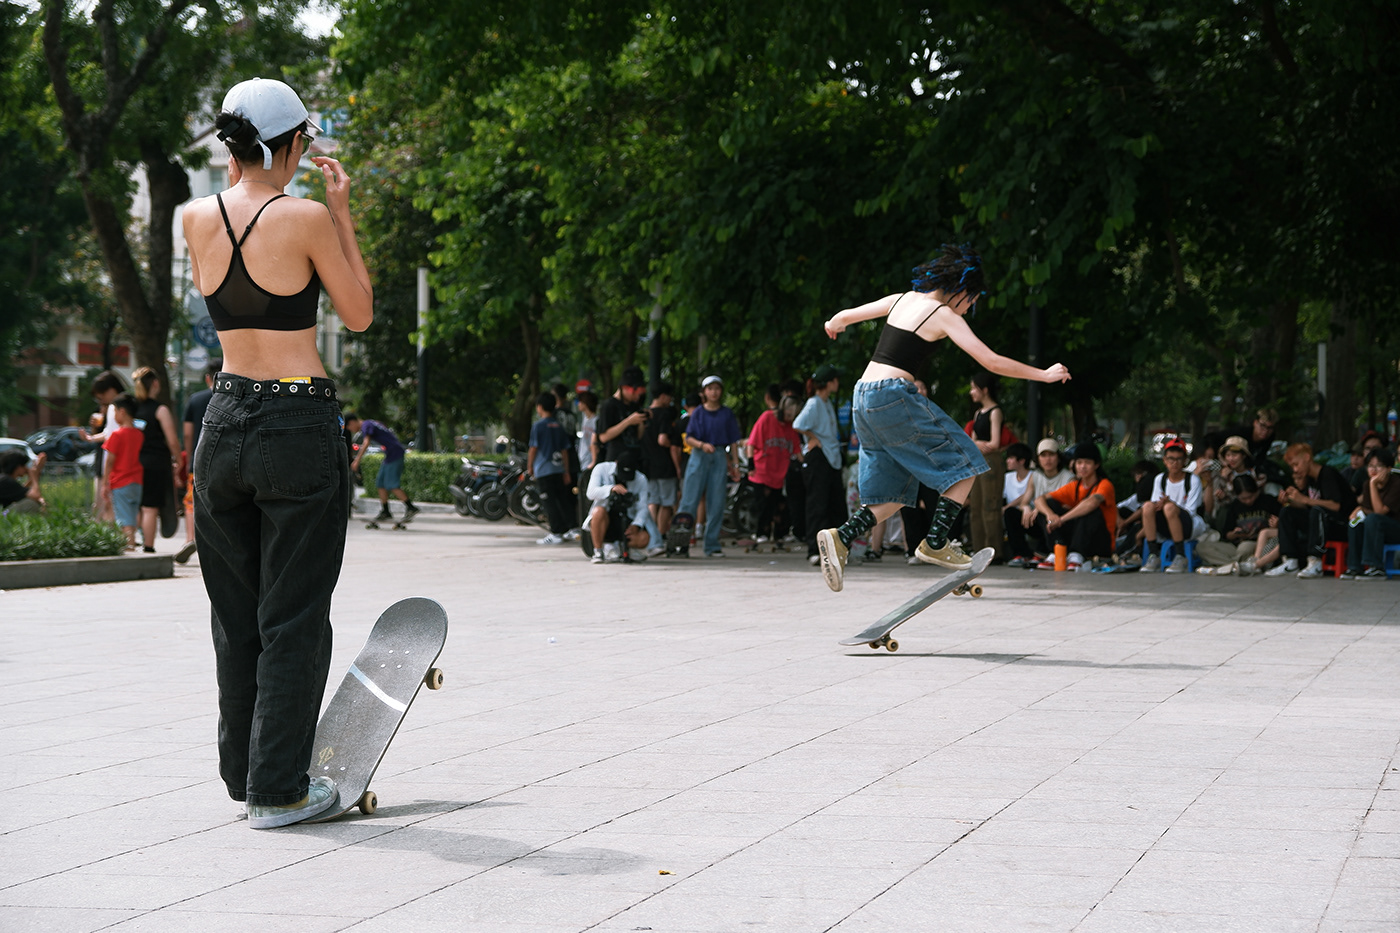 #girlskateboards girlskateboards nike sb skate contest skateboard